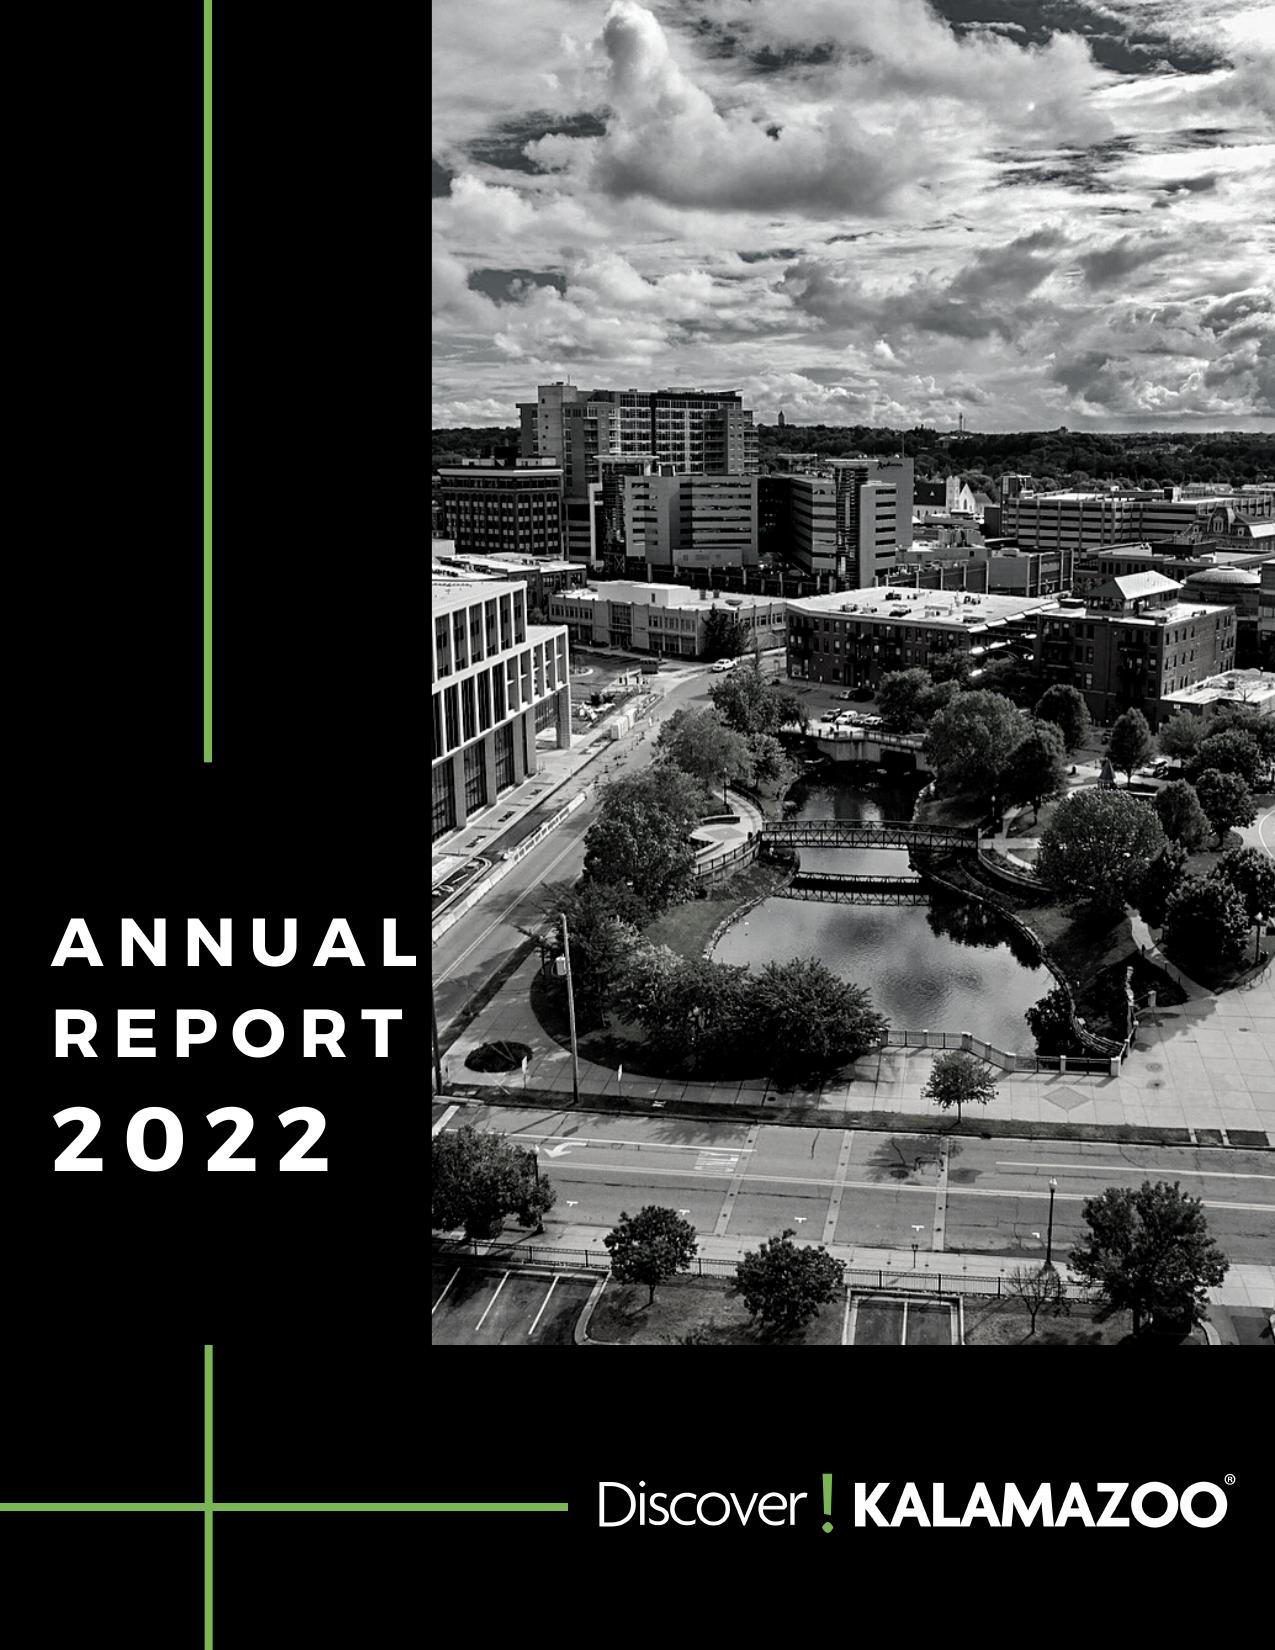 DISCOVERKALAMAZOO 2022 Annual Report